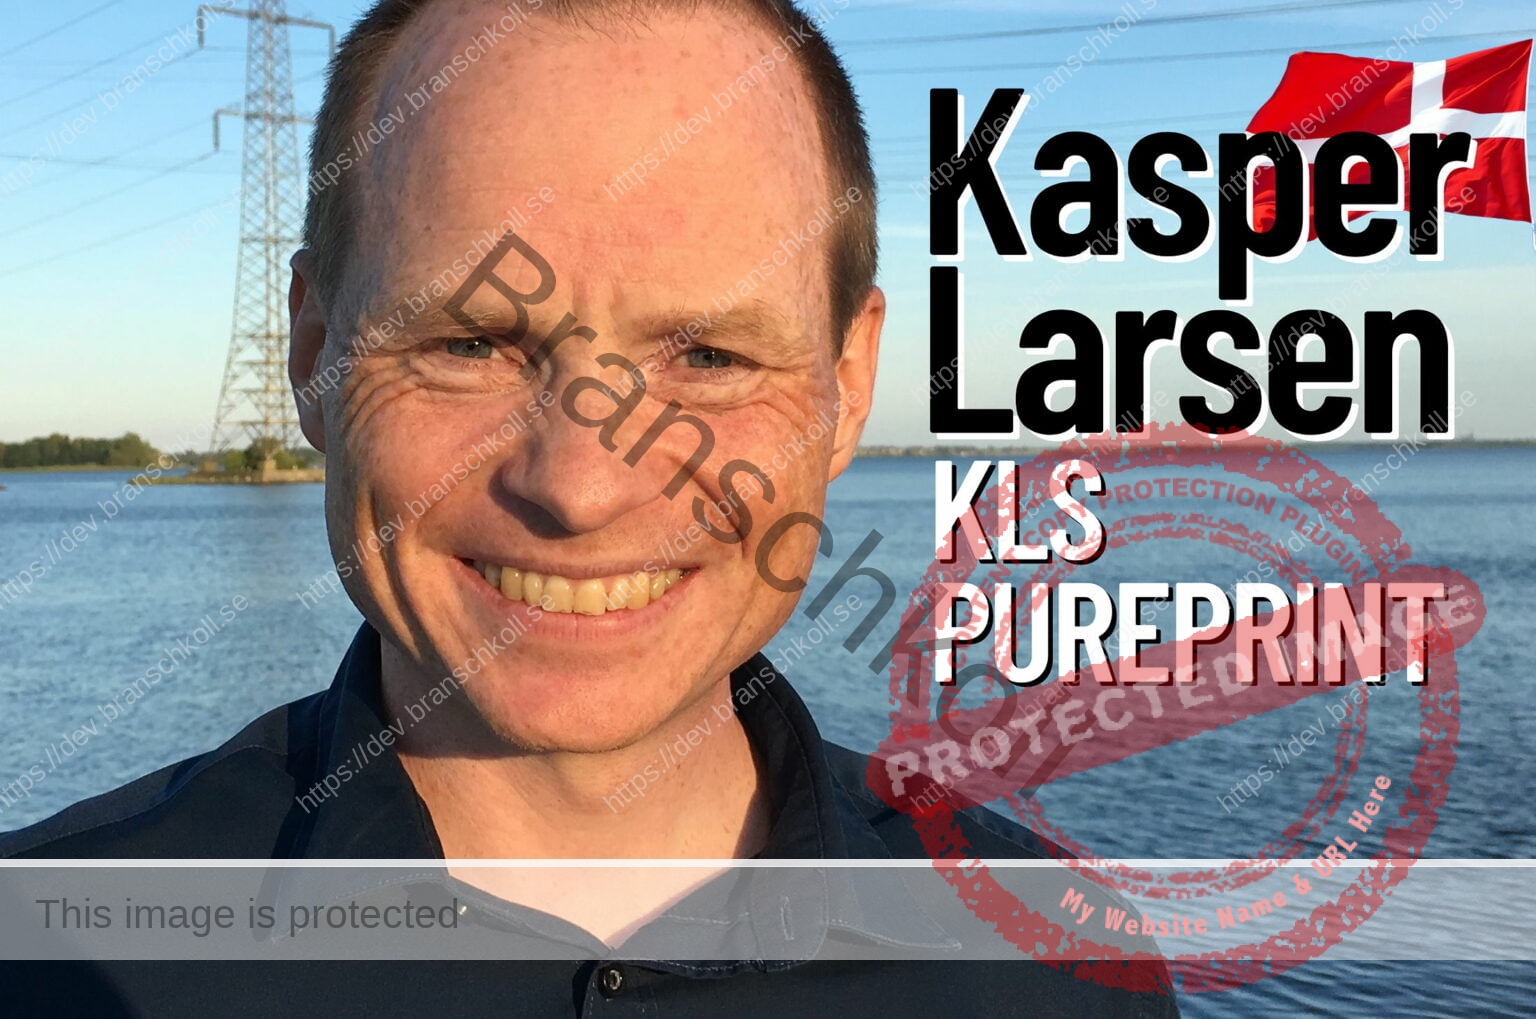 Kasper Larsen från KLS Pureprint i Danmark gästar Branschkollpodden.